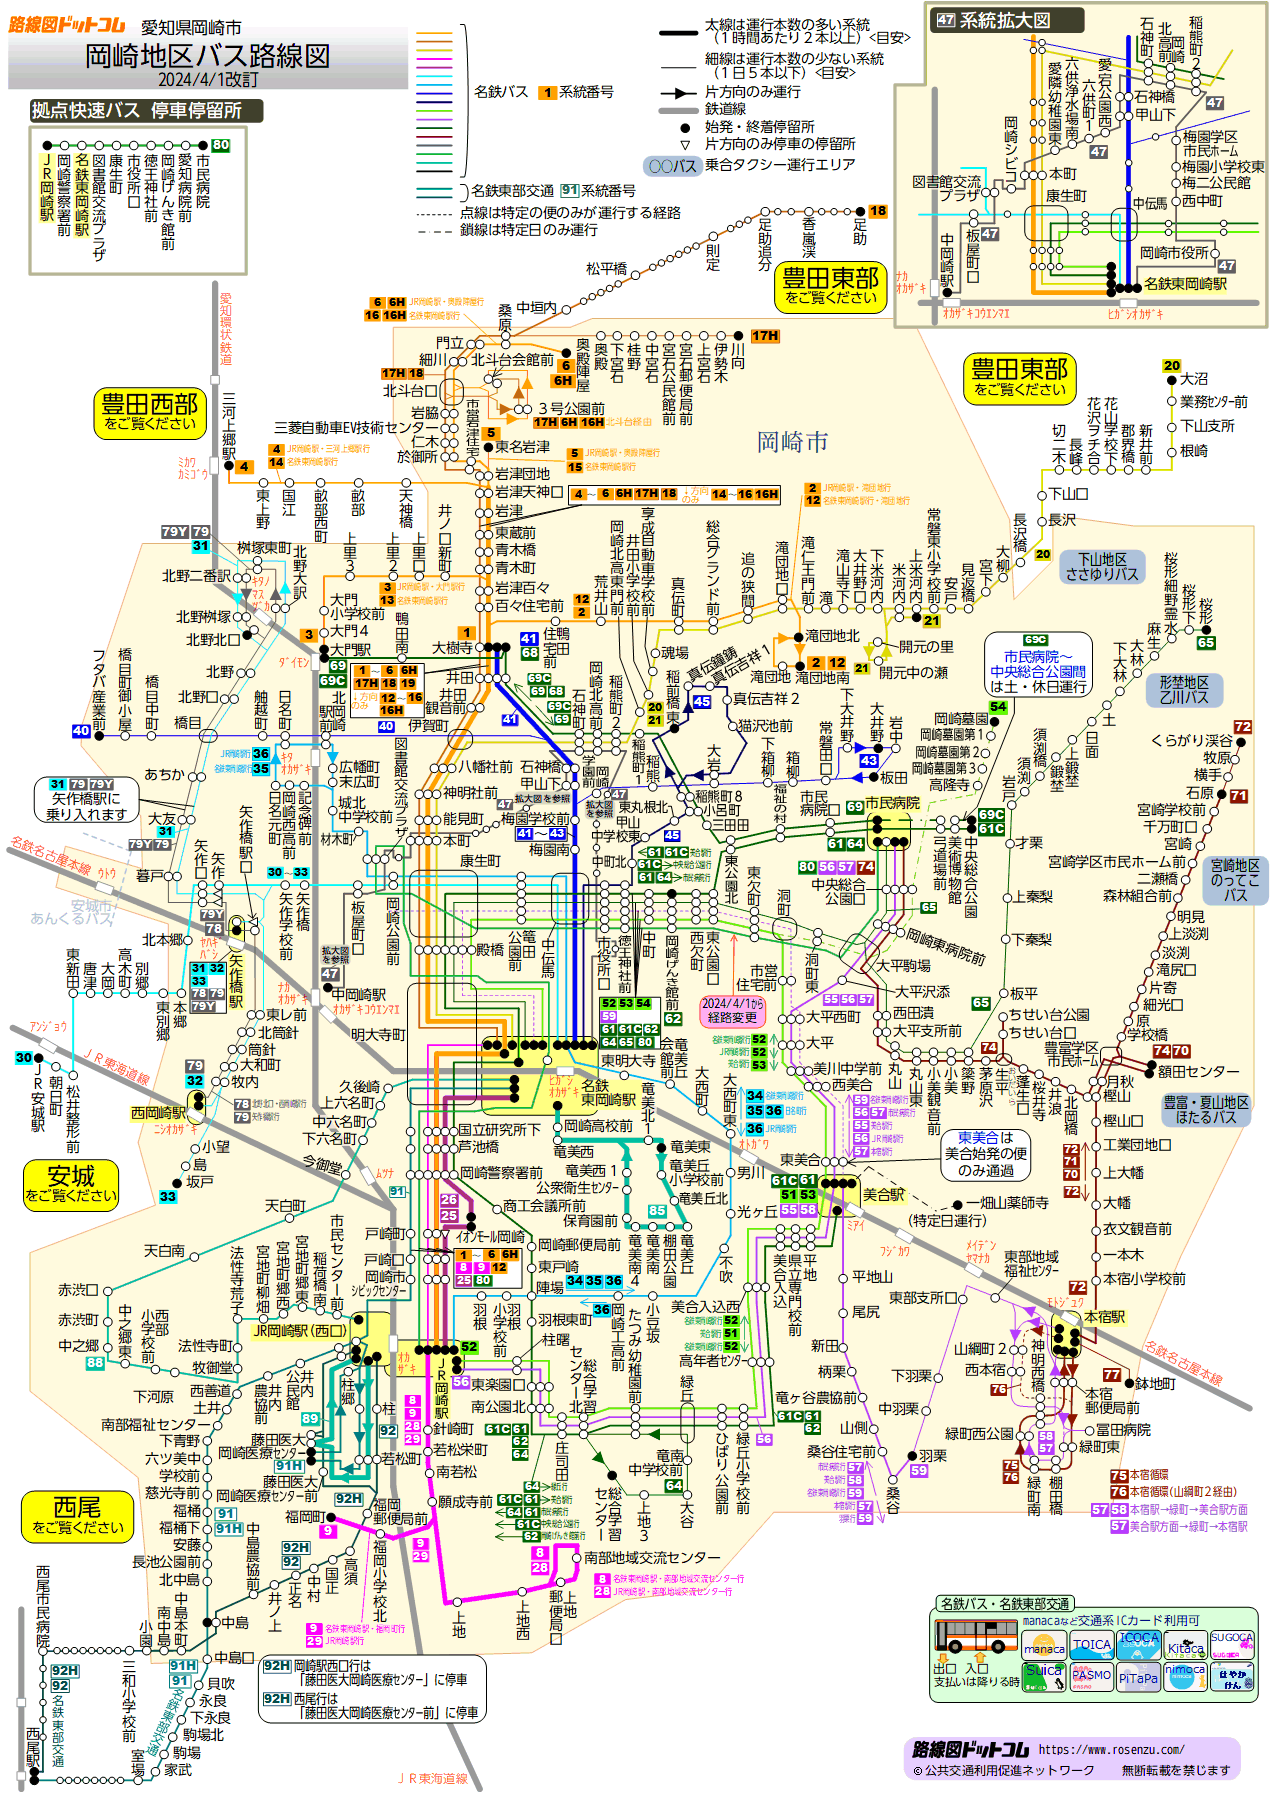 路線図ドットコム 愛知県 岡崎地区バス路線図